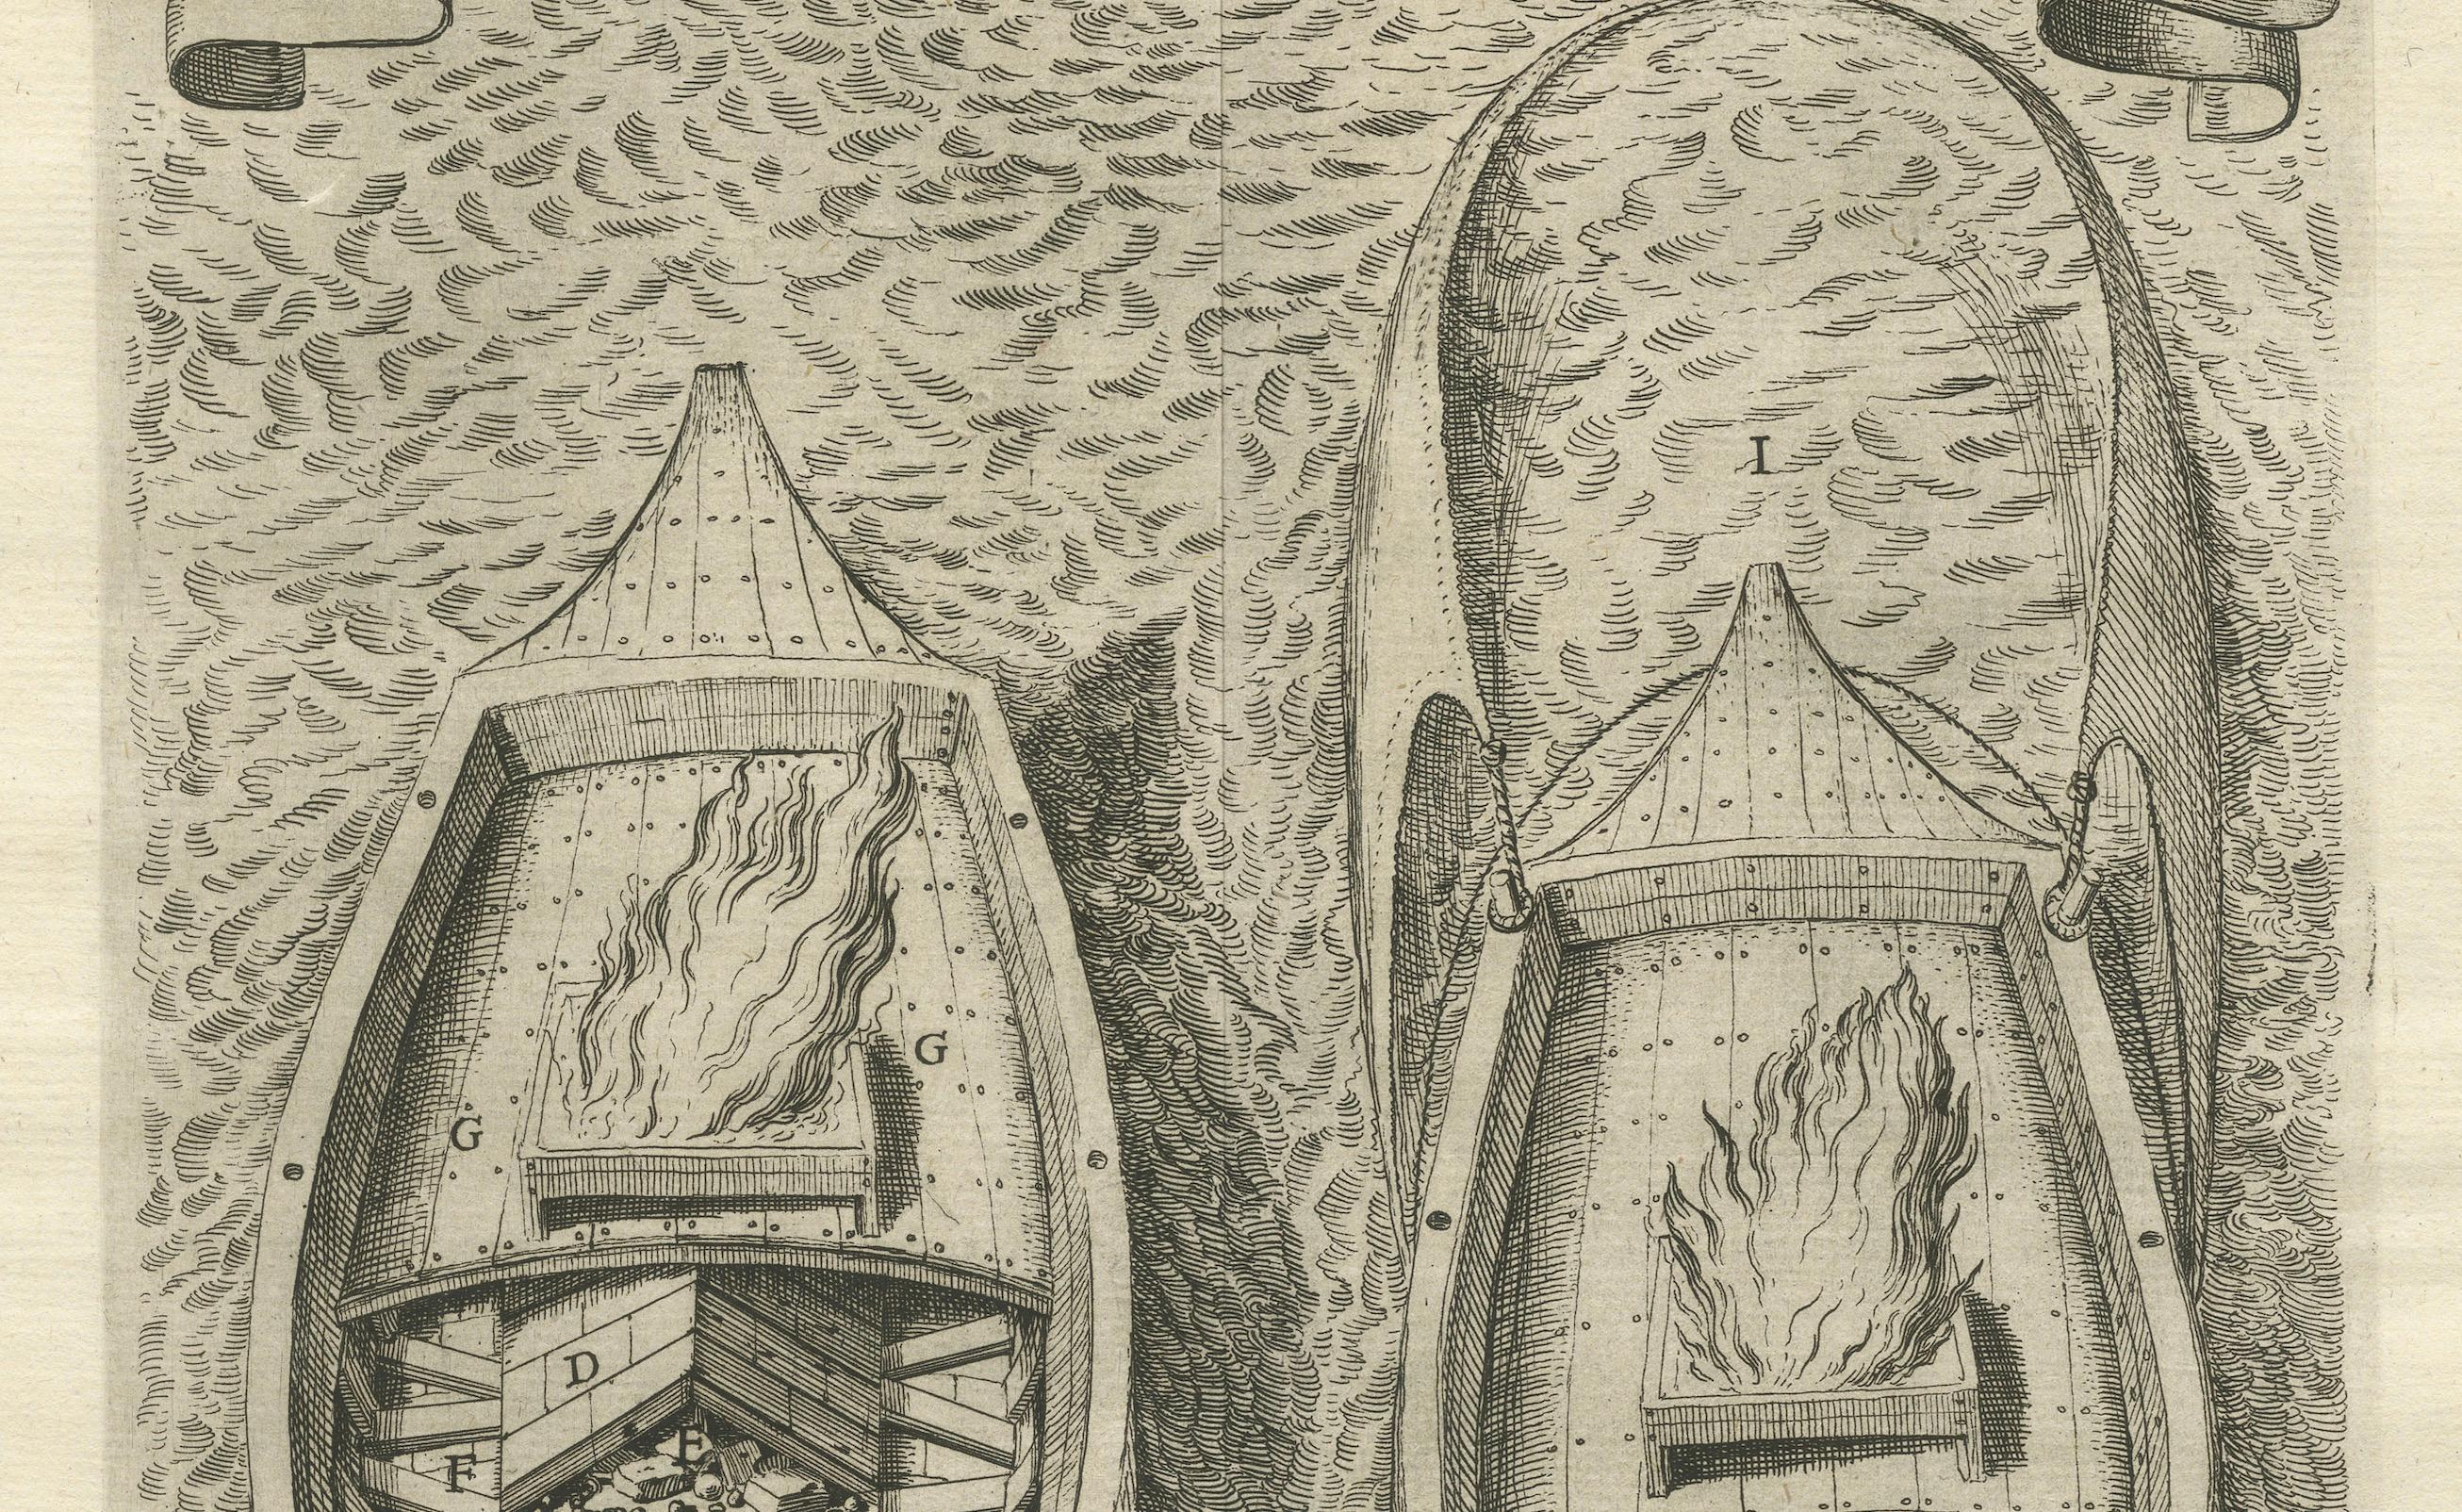 Cette gravure originale représente une illustration détaillée d'un brûlot, un type de navire naval utilisé comme arme pendant la guerre de Quatre-vingts ans. 

Les brûlots étaient essentiellement des bombes flottantes, remplies de combustibles et